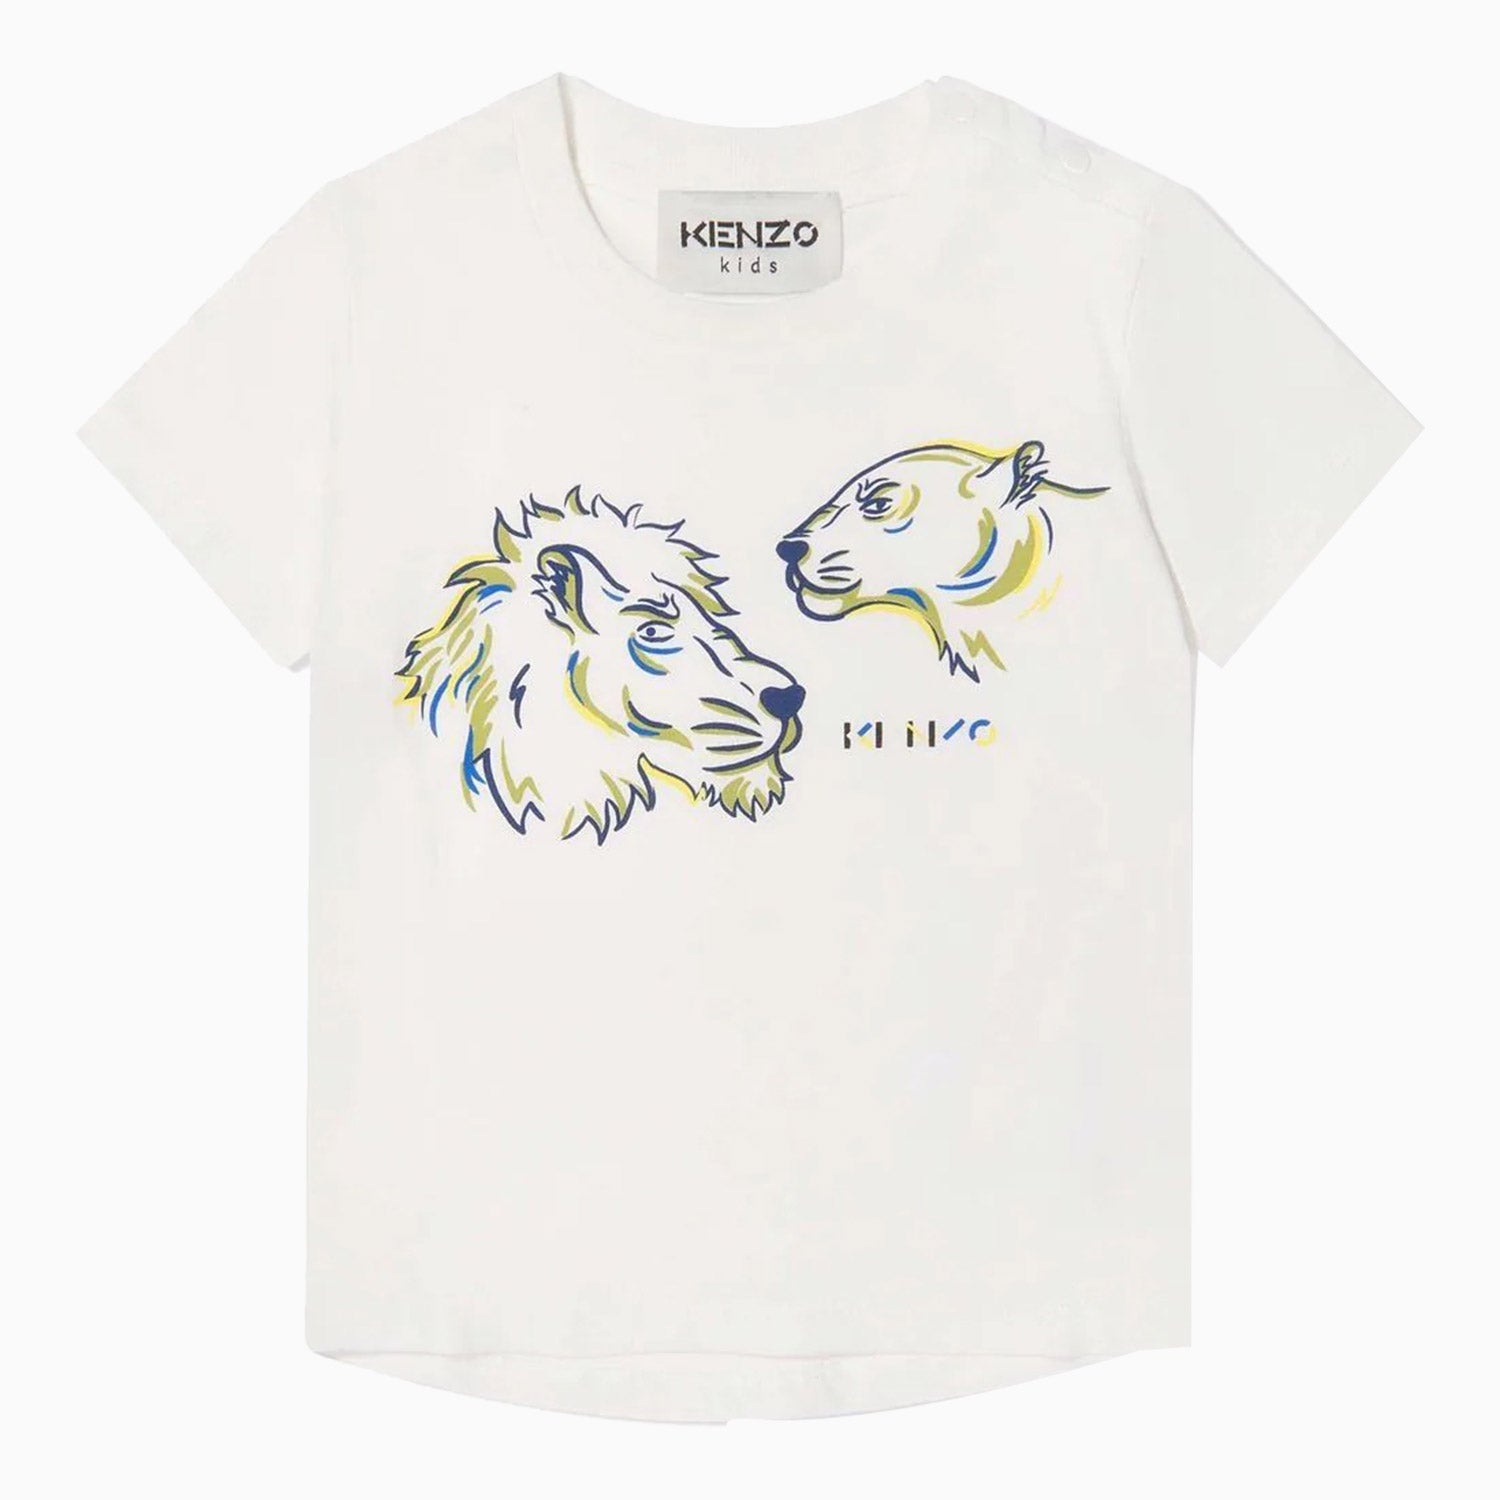 kenzo-kids-animal-print-logo-t-shirt-toddlers-k05394-152